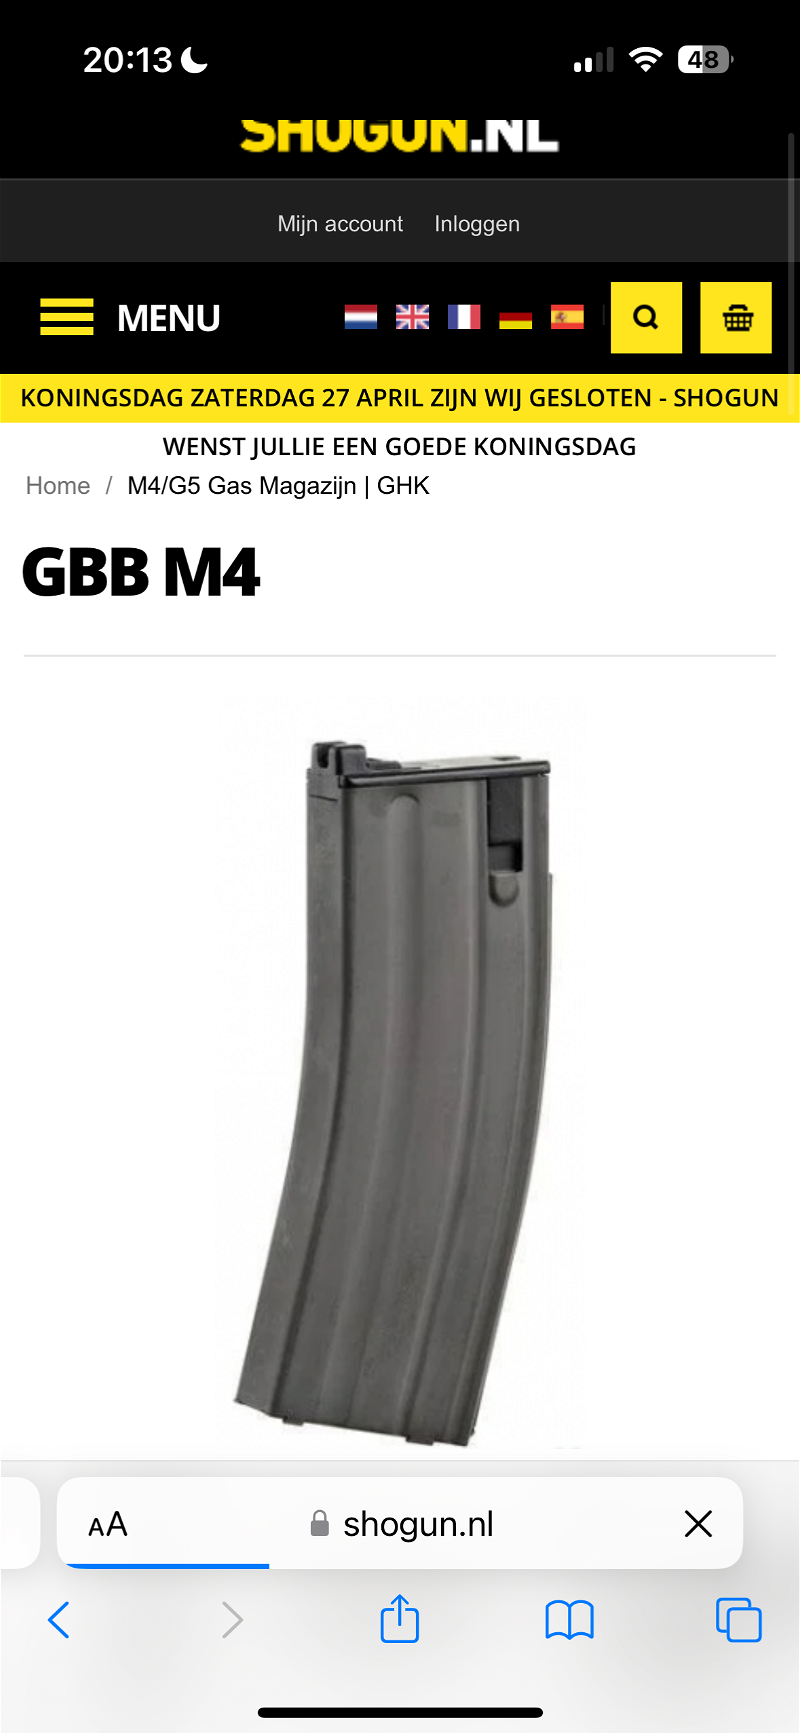 Image 1 pour M4 Gbbr magazijnen gezocht